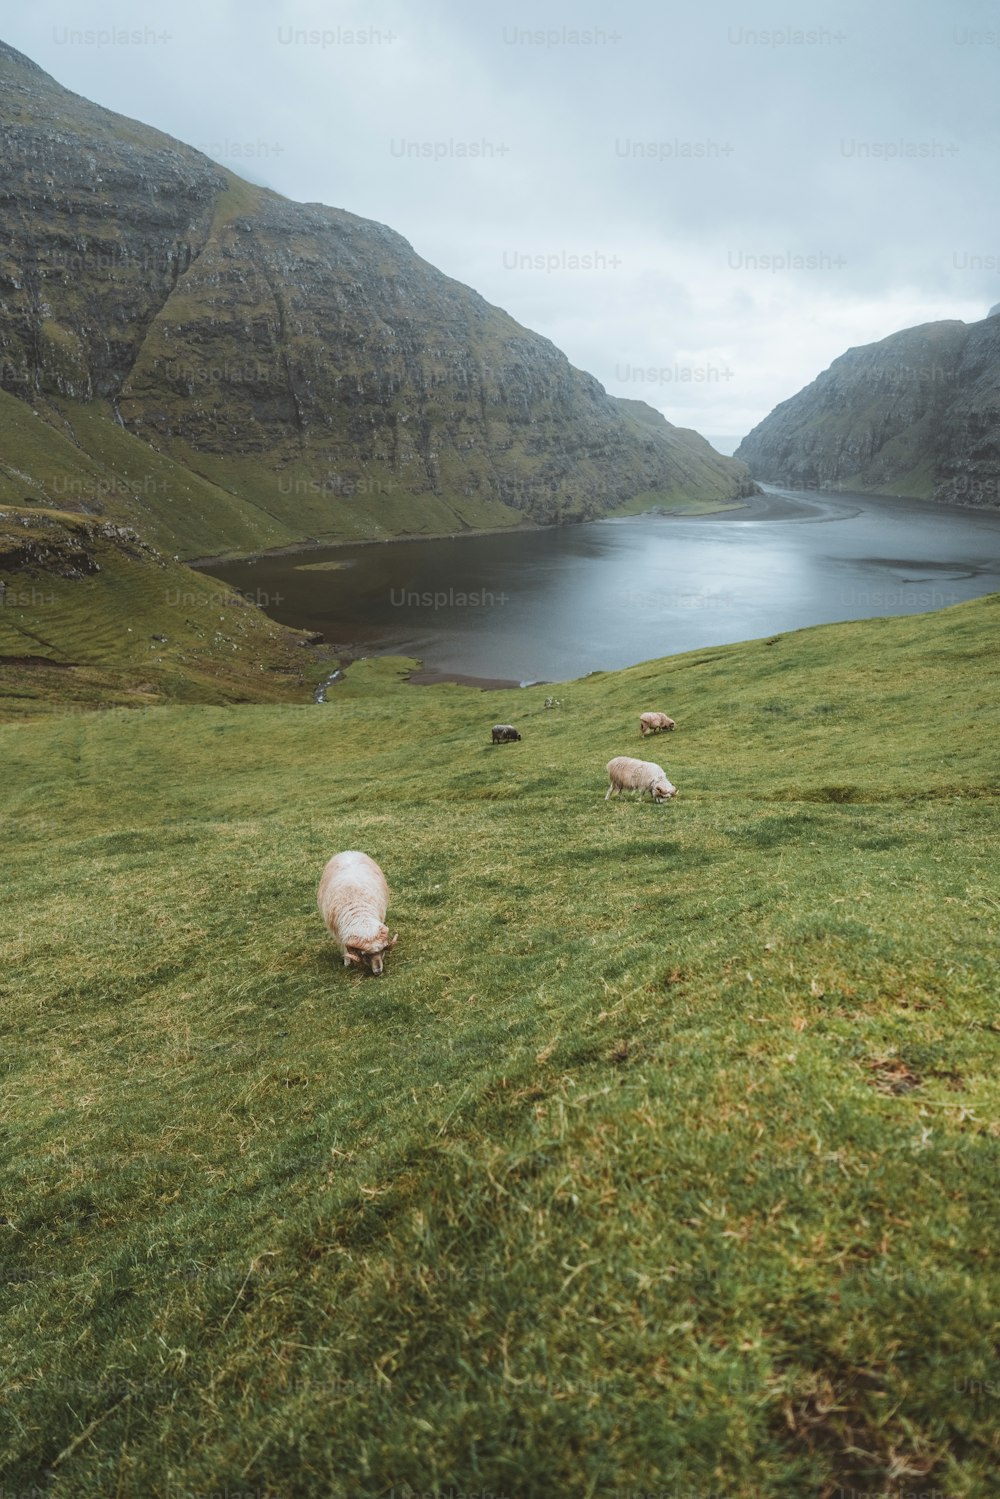 緑豊かな丘の中腹で放牧されている羊の群れ